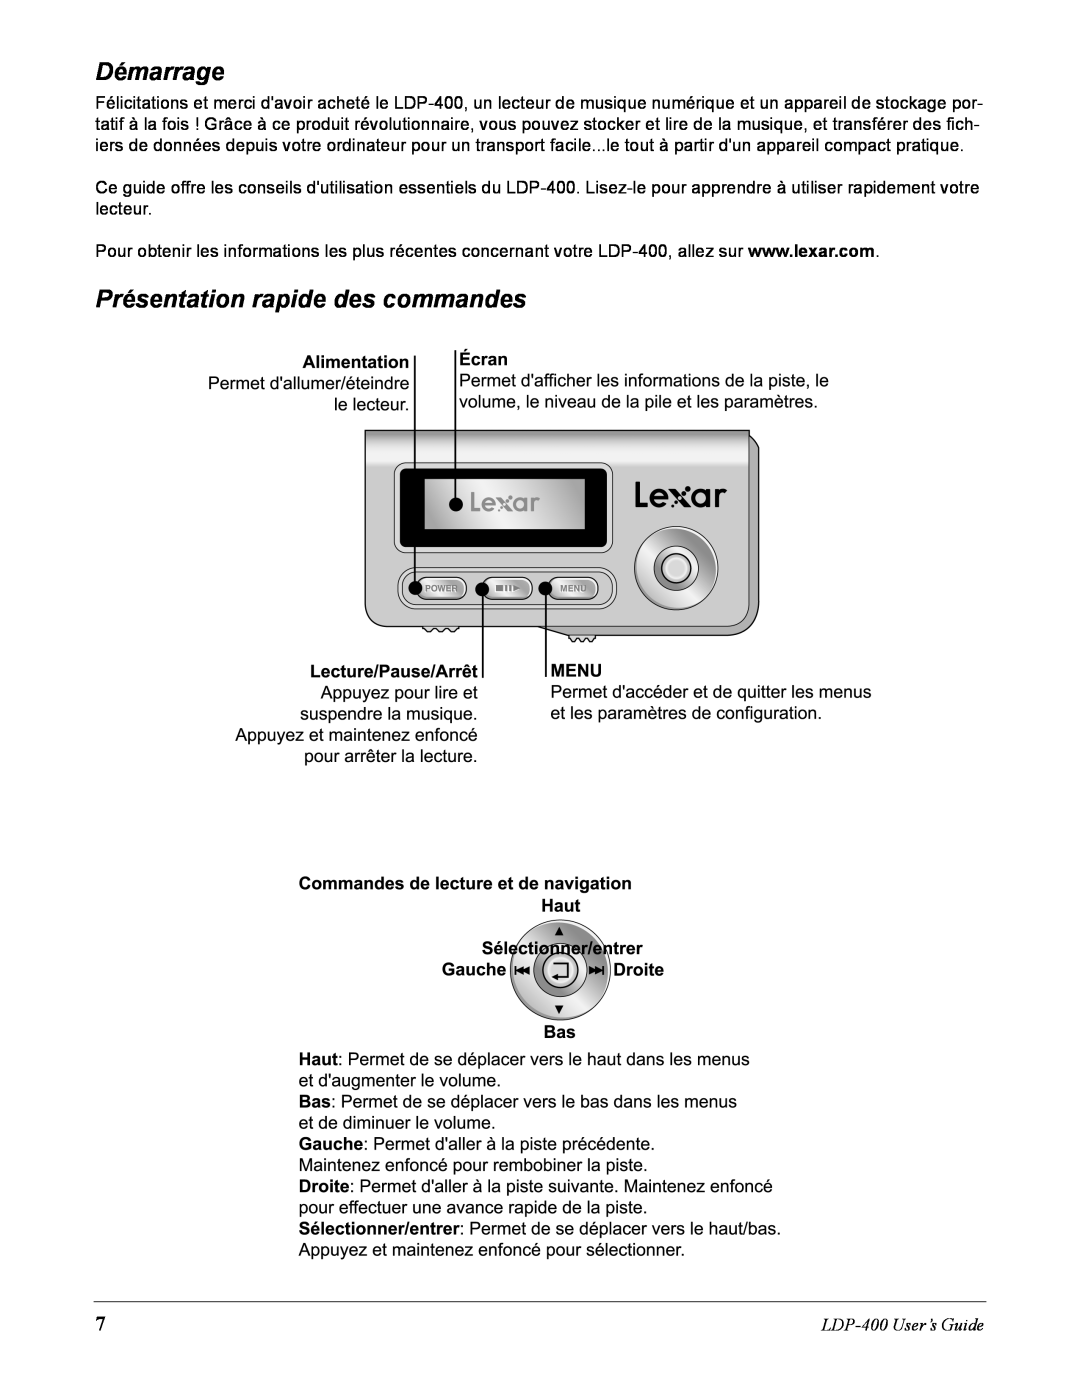 Lexar Media manual Démarrage, Présentation rapide des commandes, LDP-400User’s Guide 